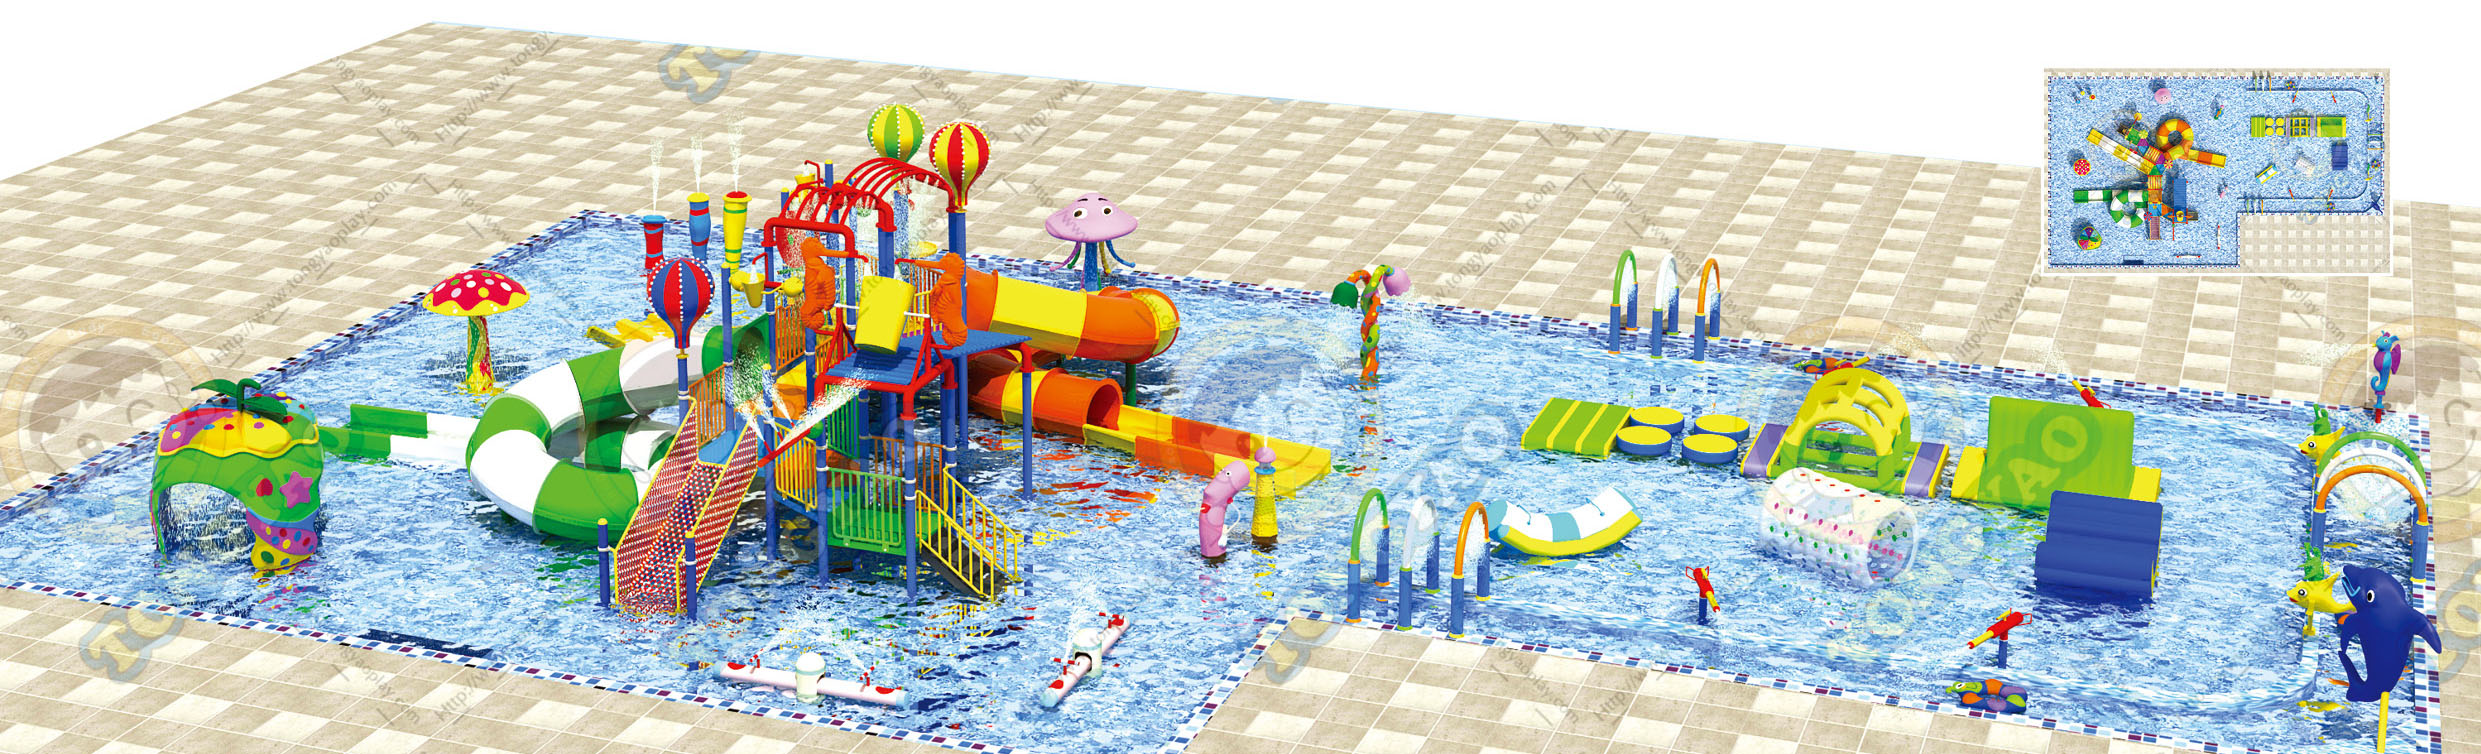 工厂直销大型水上滑梯乐园大型组合滑梯儿童户外喷水游泳池滑梯组合